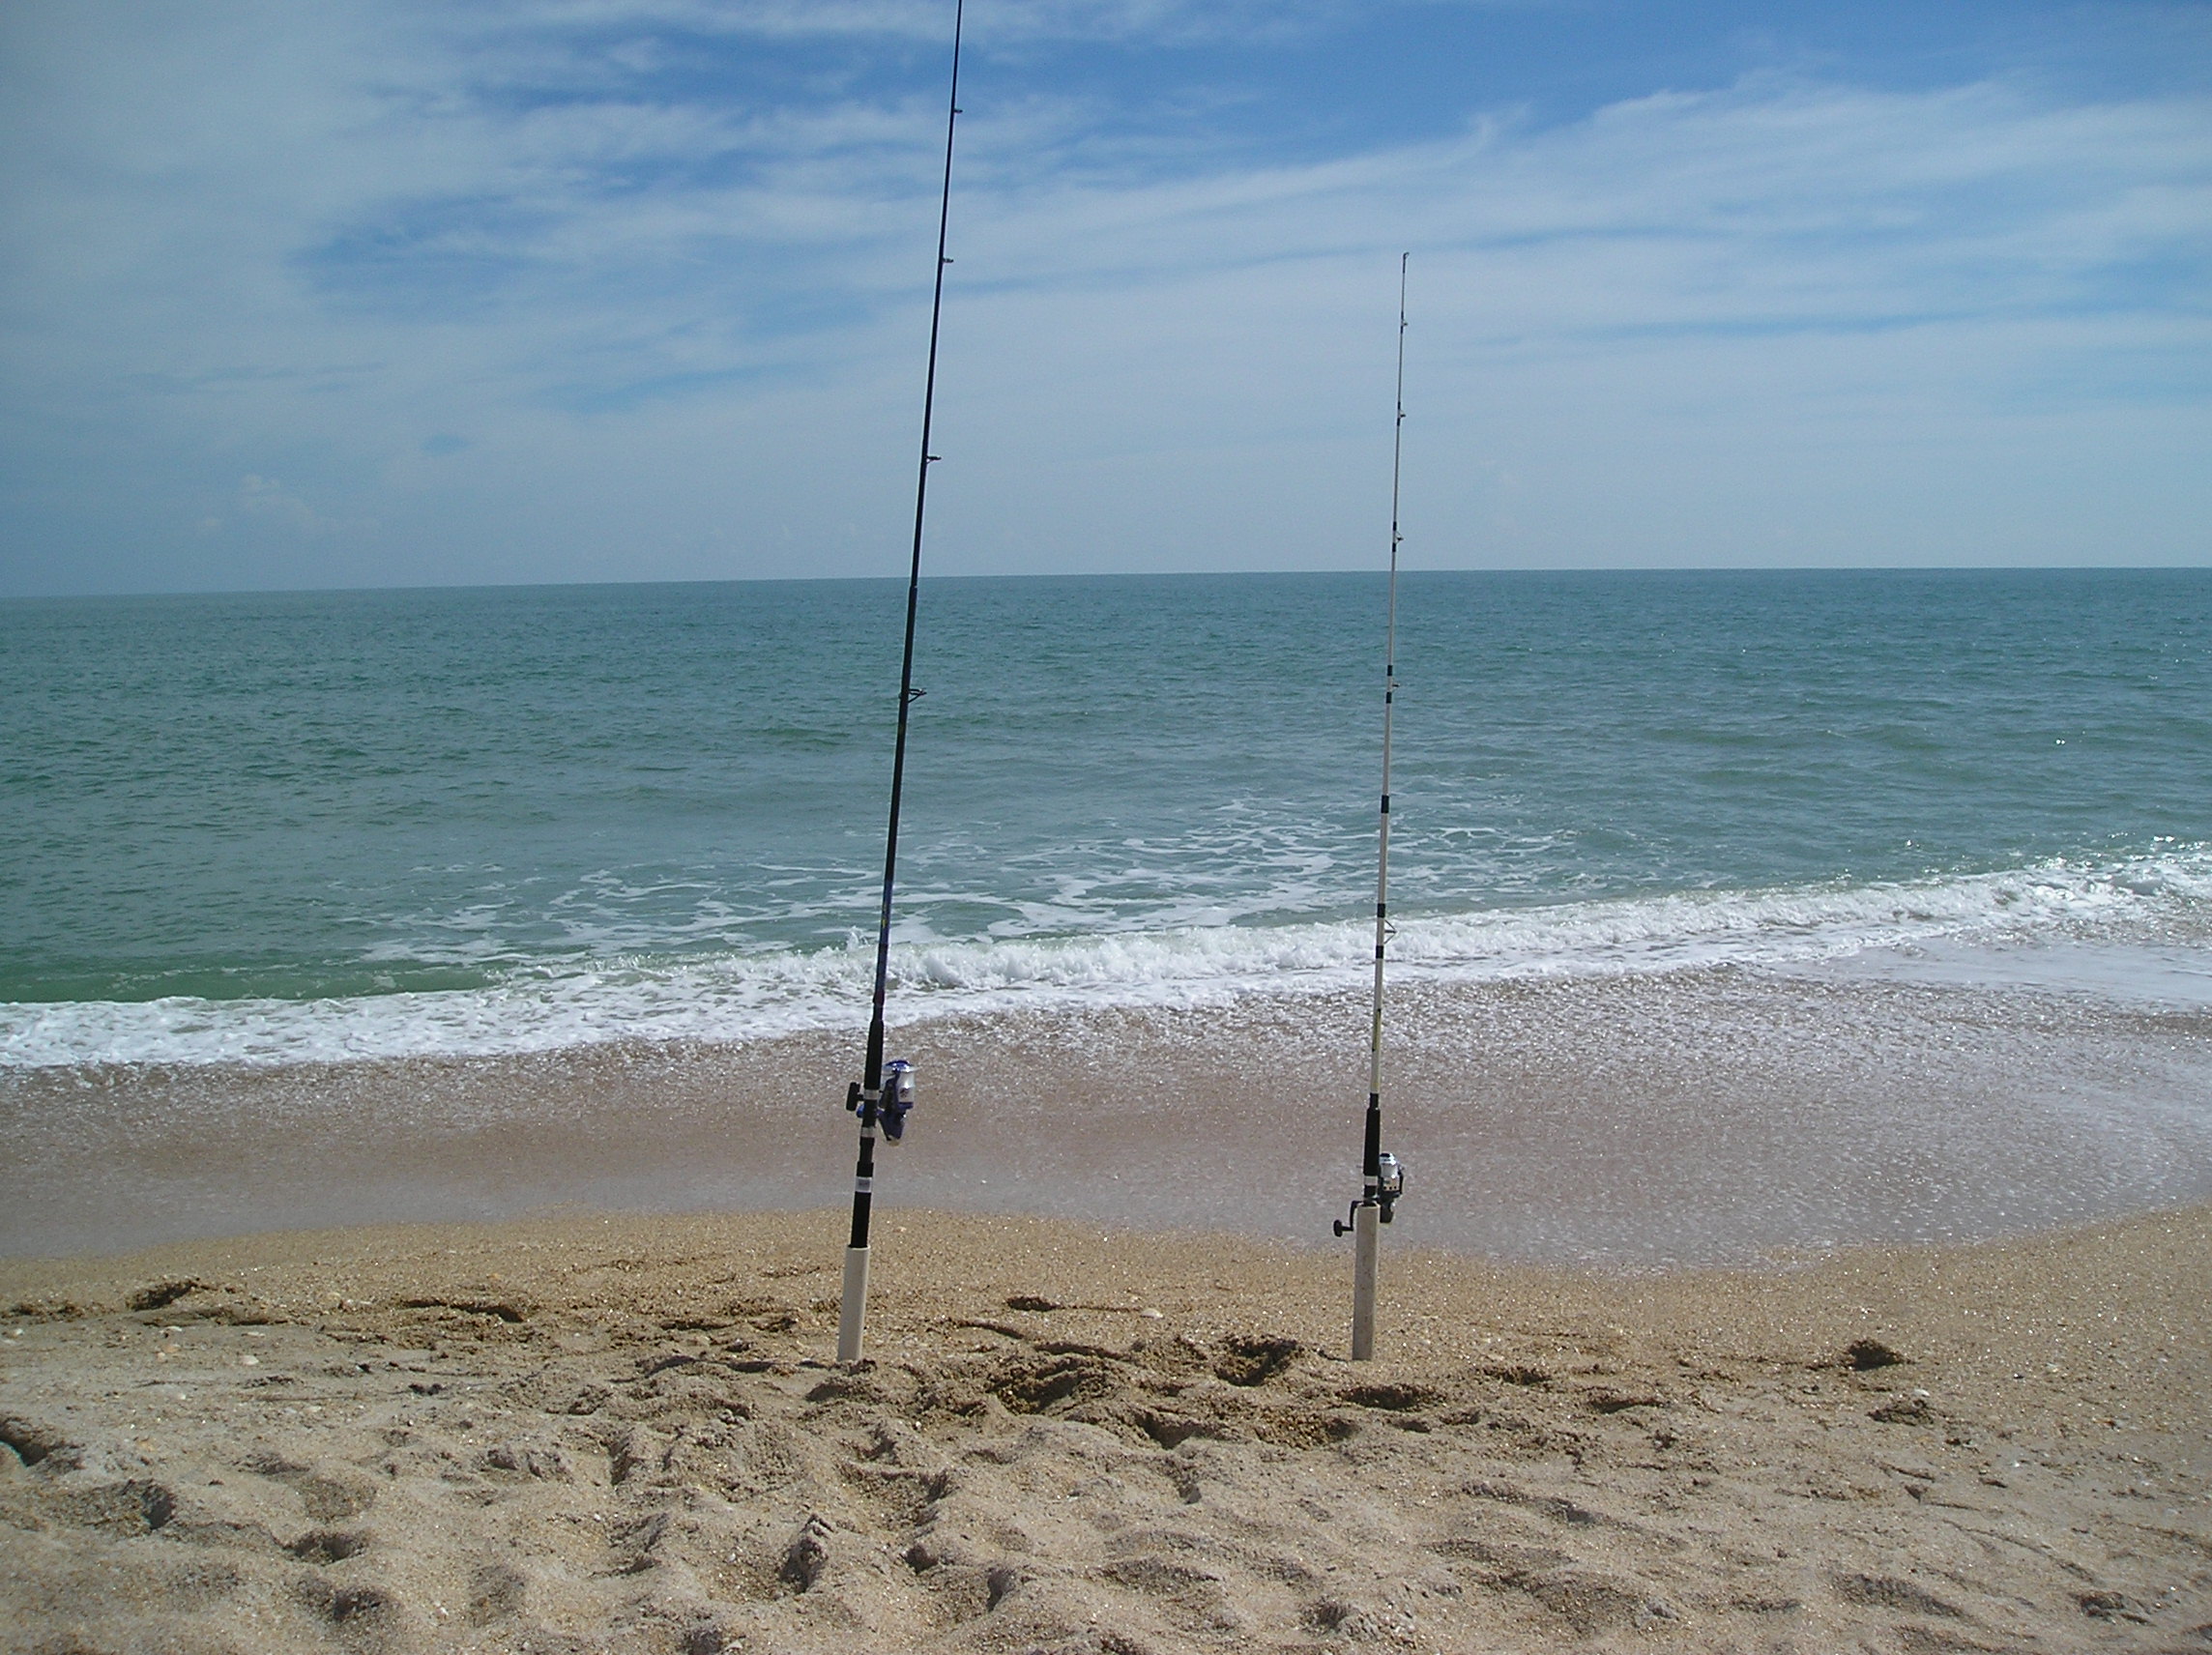 [Fishing lines] Photo by turtlemom4bacon.